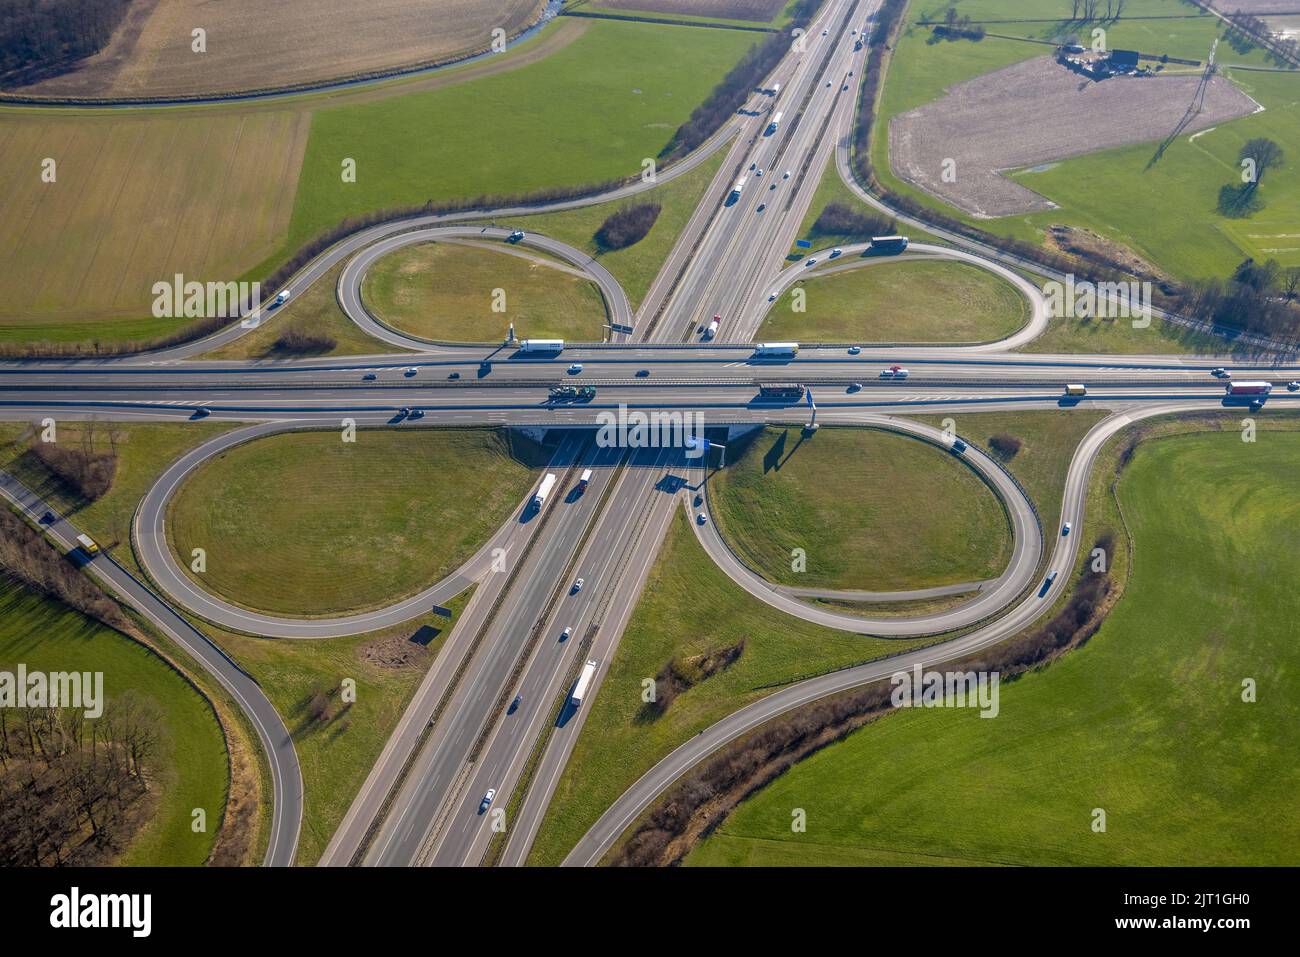 Fotografia aerea, svincolo autostradale Lotte/Osnabrück, superstrada A1 e superstrada A30, Lotte, Tecklenburger Land, Renania settentrionale-Vestfalia, Germania, superstrada, ecc. Foto Stock